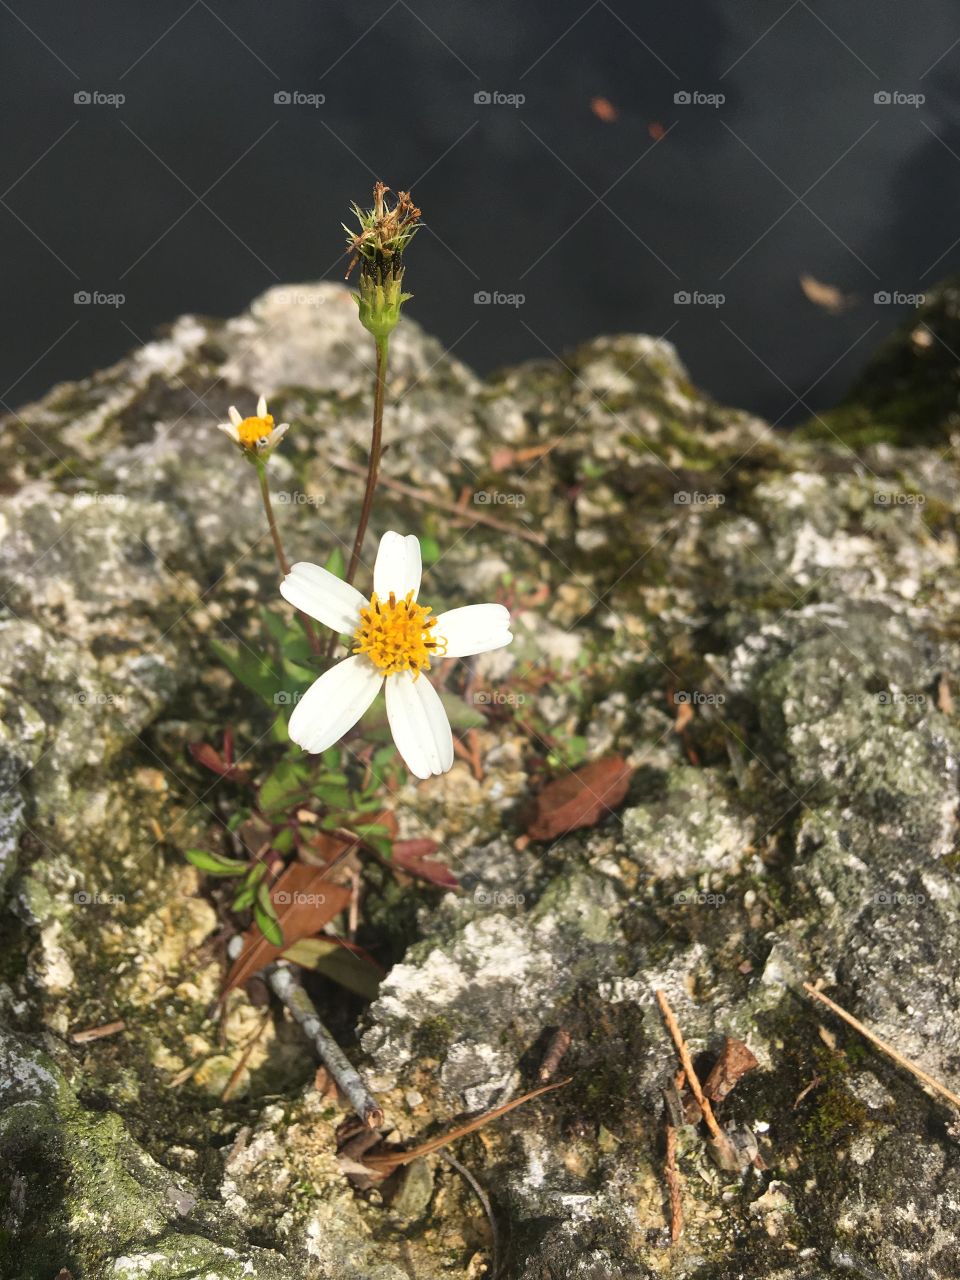 Flower on a rock